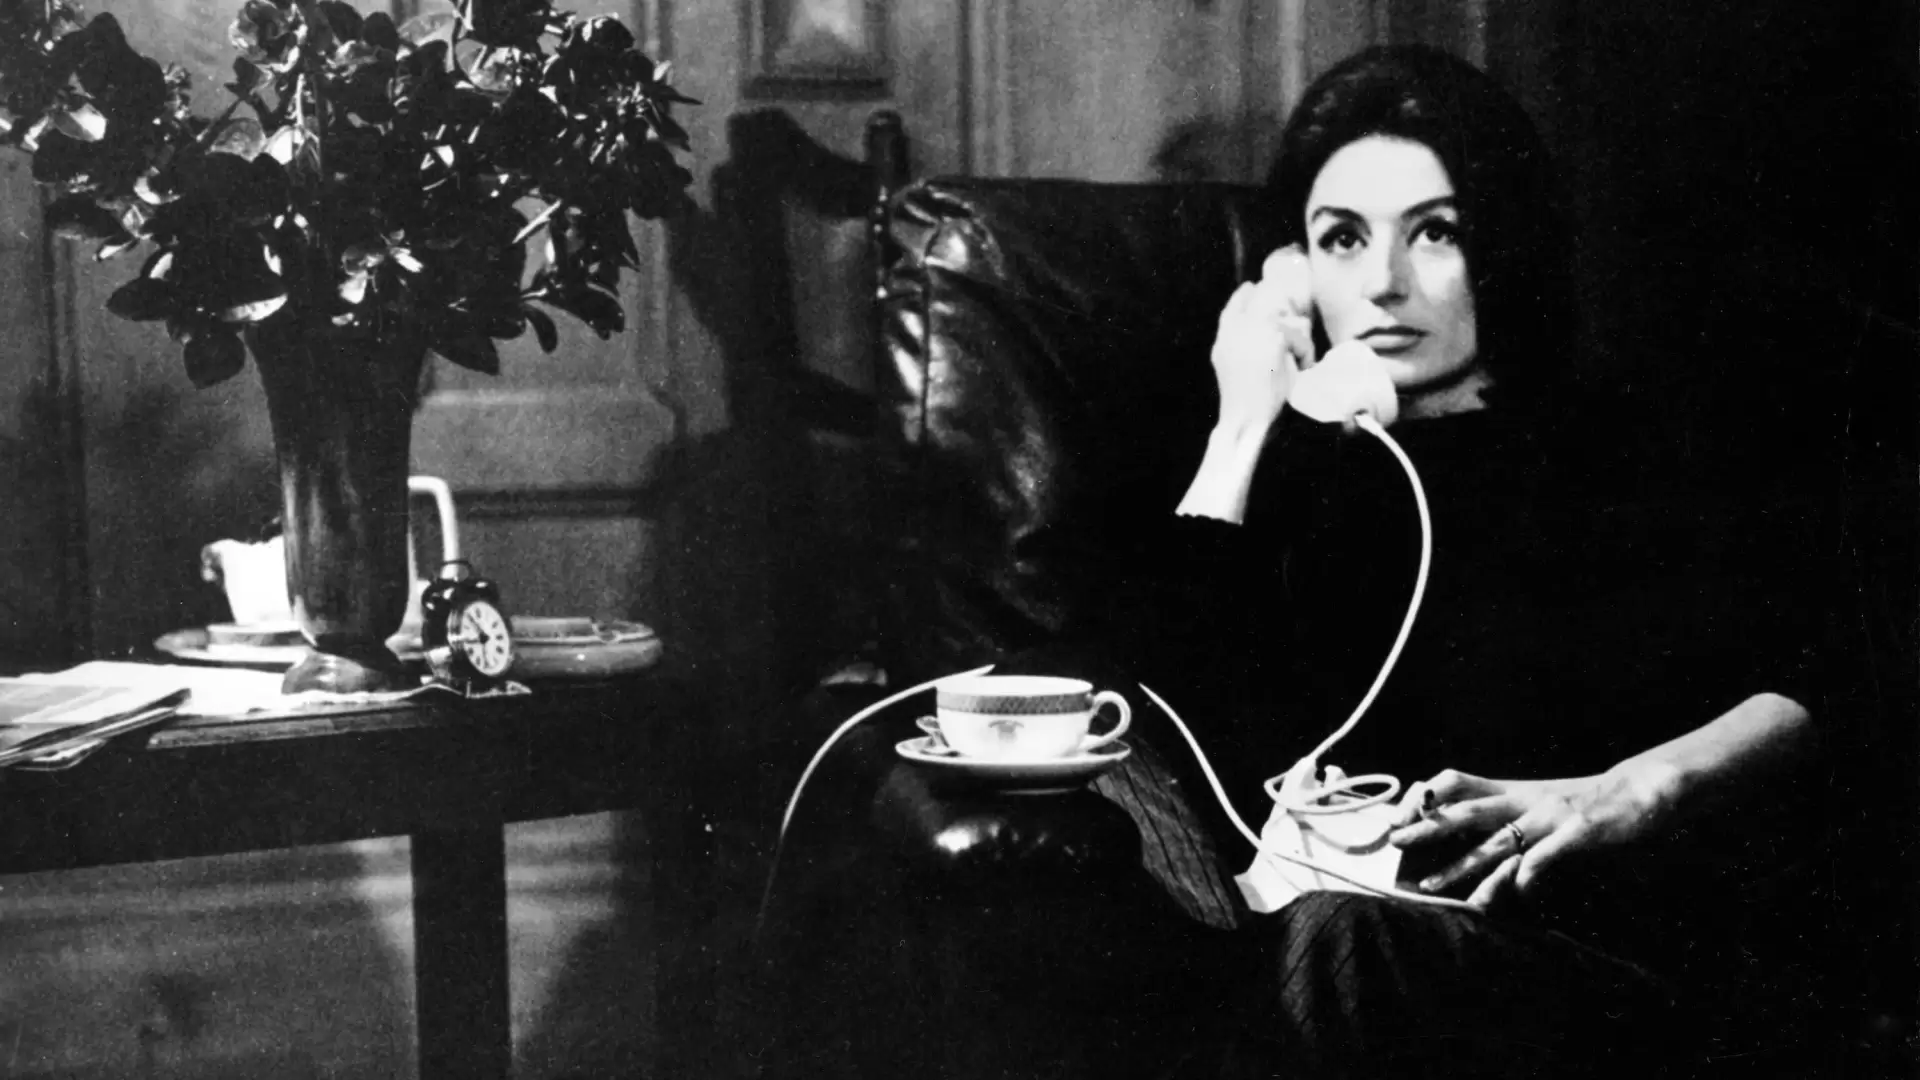 دانلود فیلم A Man and a Woman 1966 (یک مرد و یک زن) با زیرنویس فارسی و تماشای آنلاین